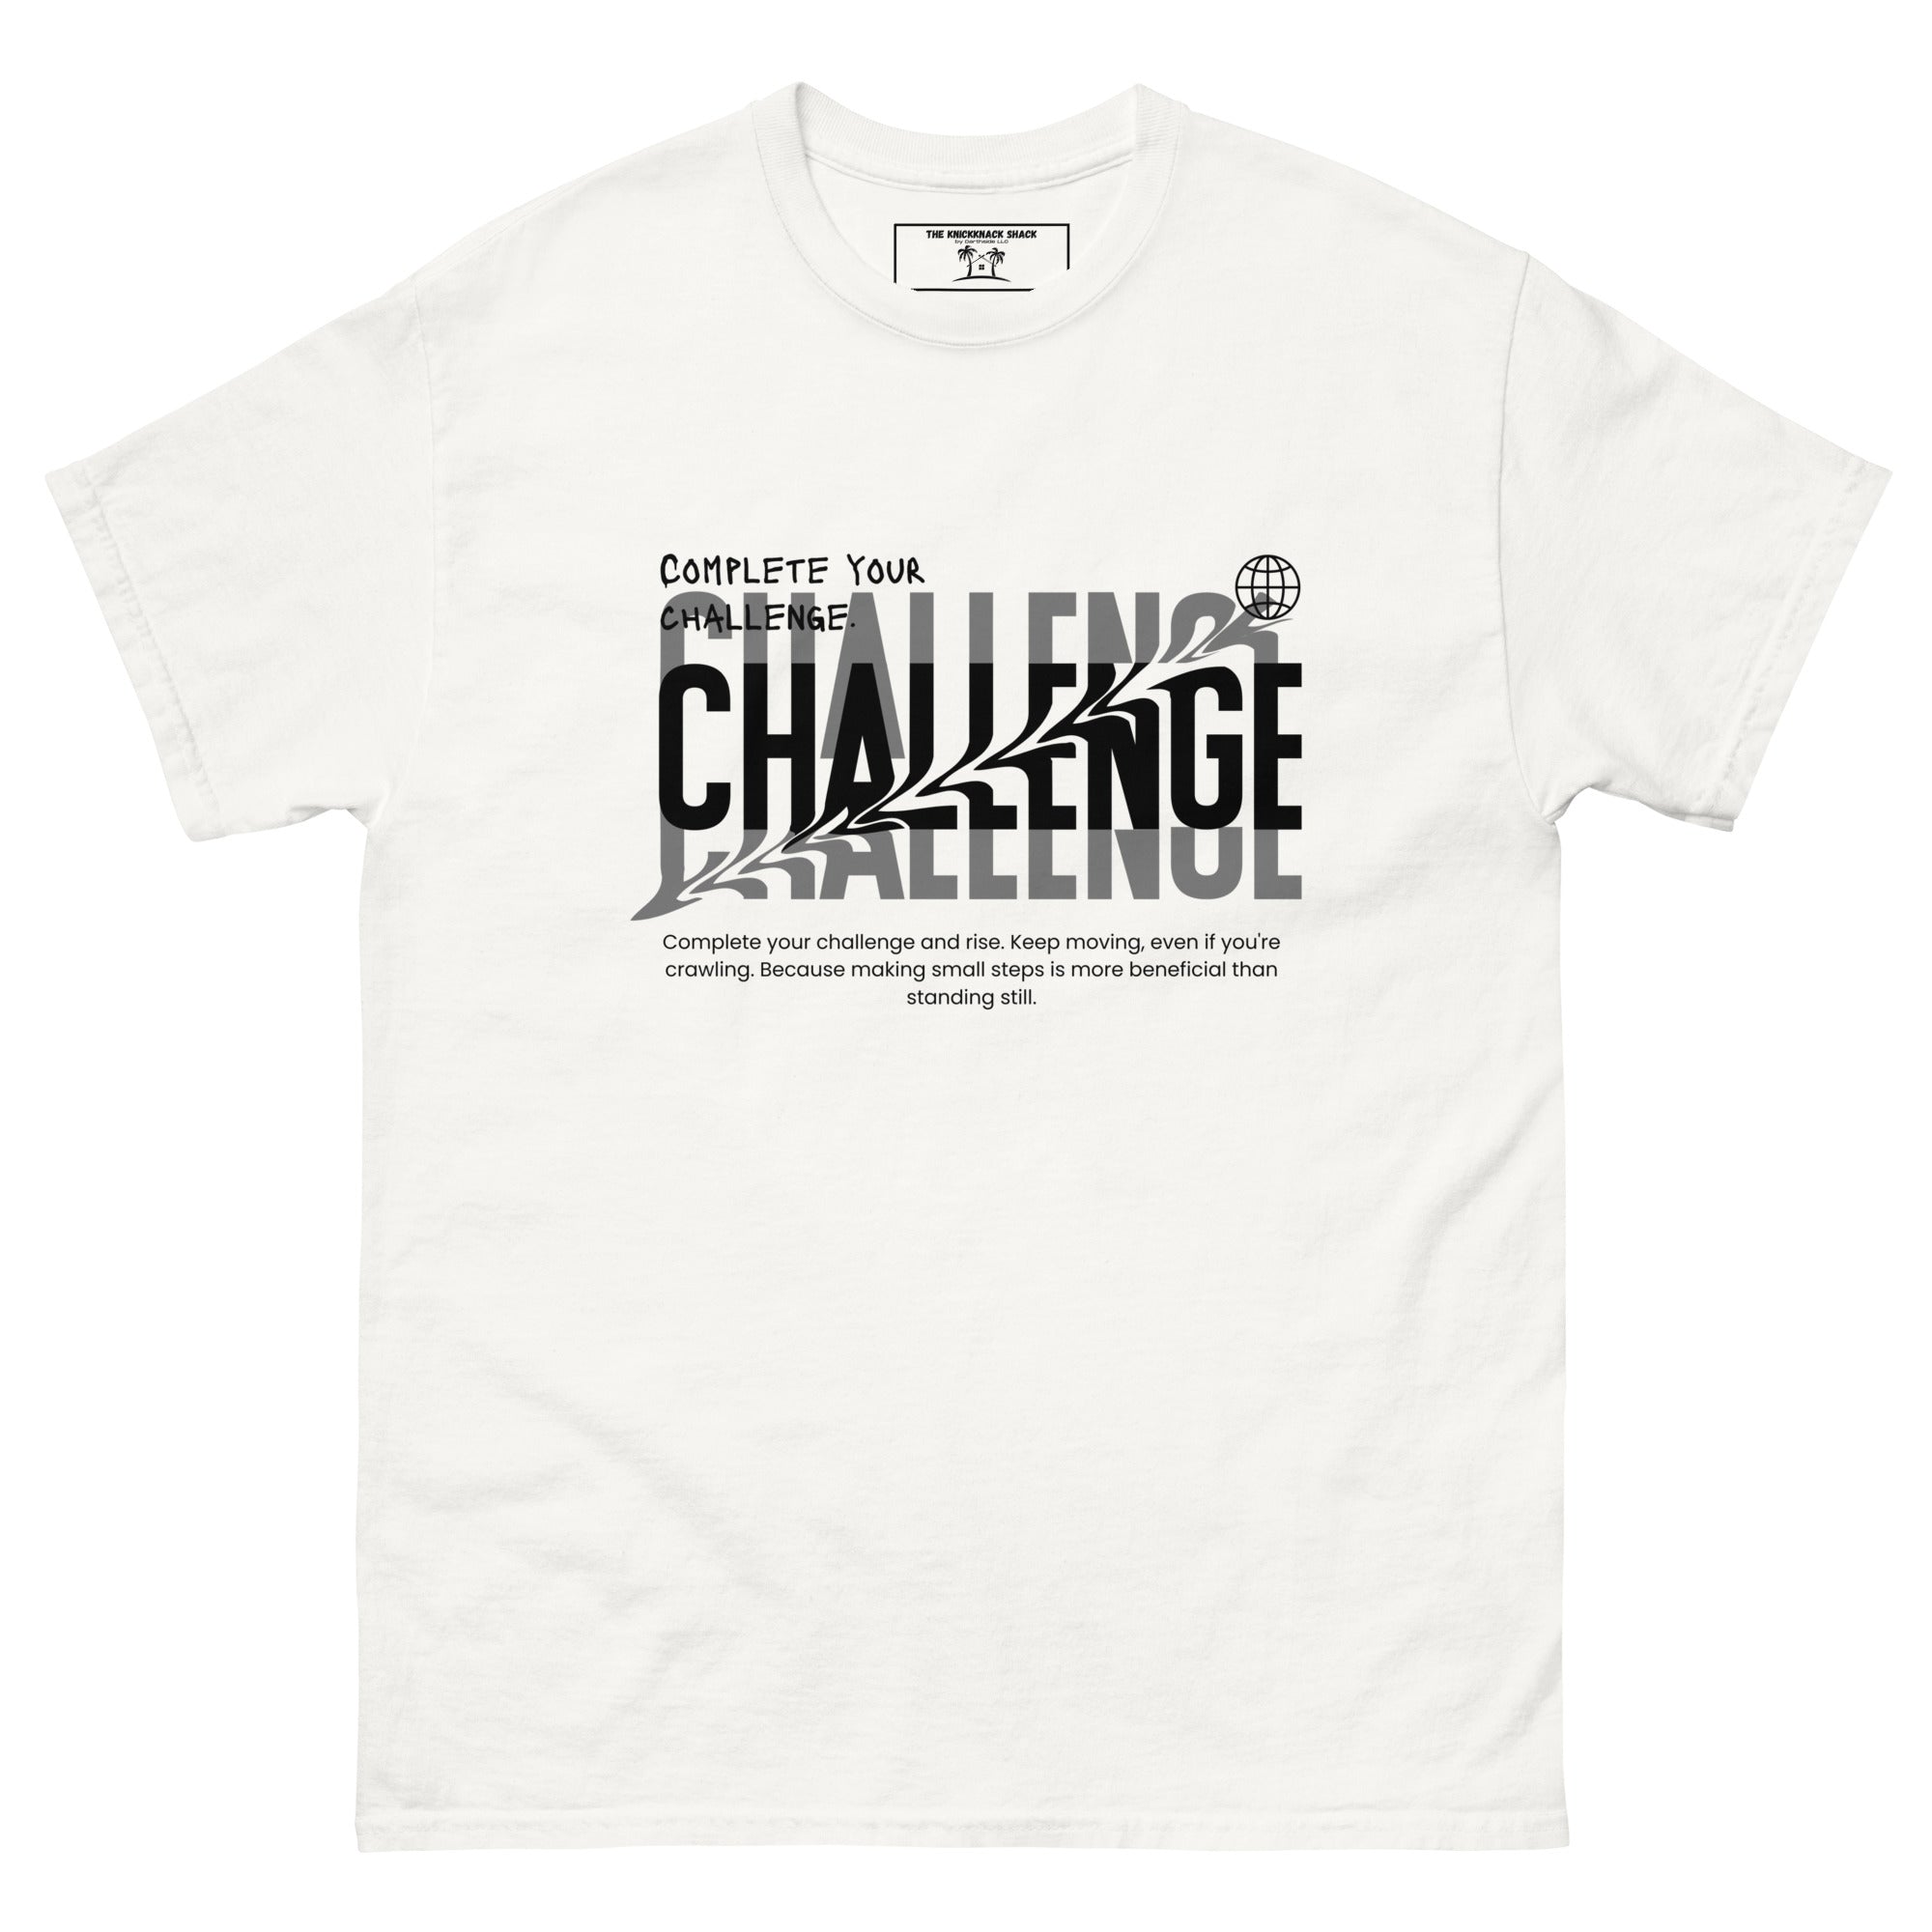 Camiseta clásica: completa tu desafío (colores claros)